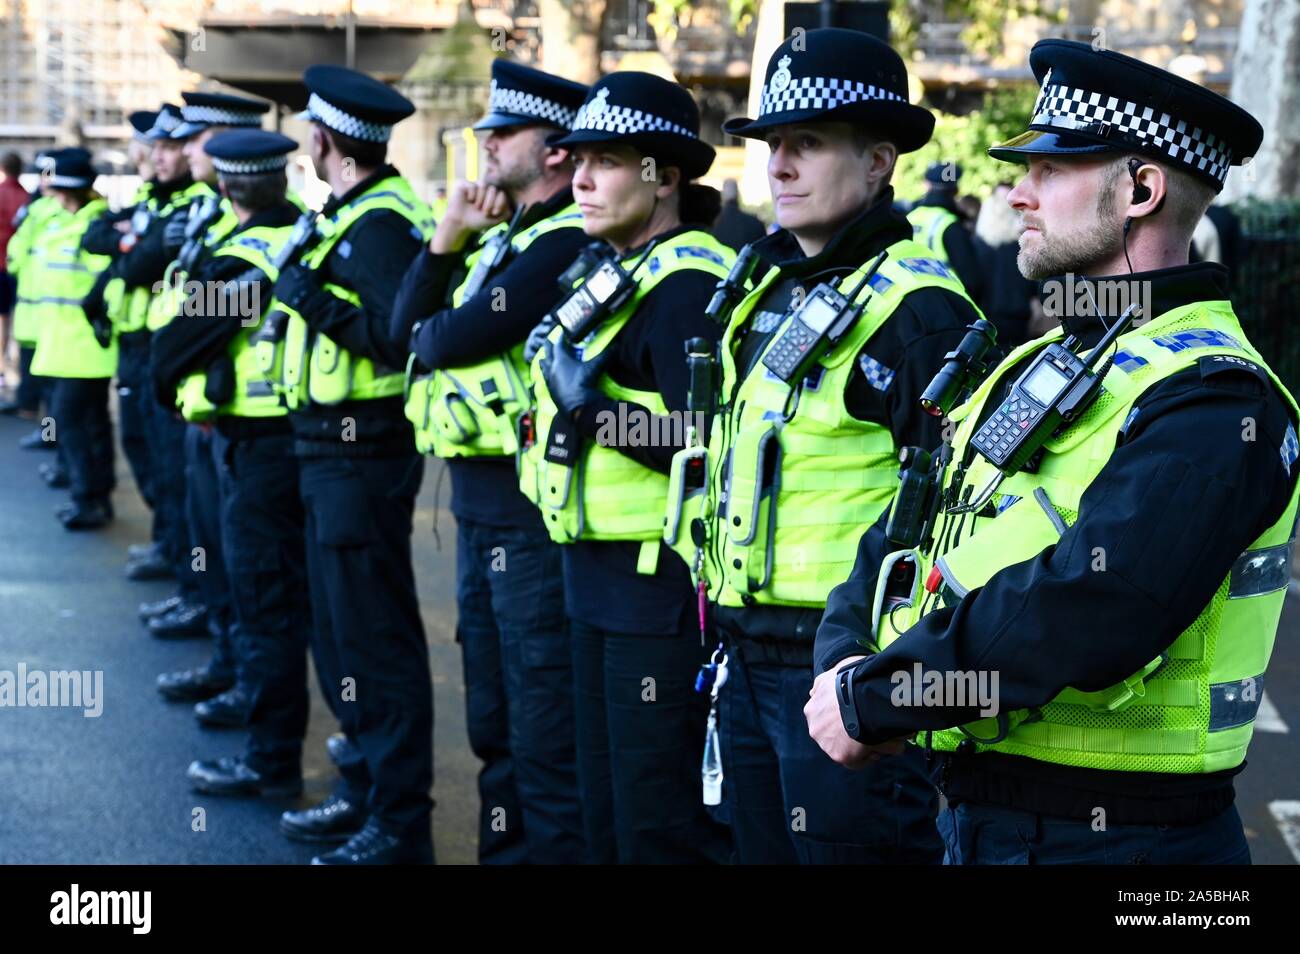 La línea de la policía. Voto popular de marzo. Cerca de un millón de manifestantes marcharon Anti-Brexit en el Parlamento para exigir un segundo referéndum.Palacio de Westminster, Londres. UK Foto de stock